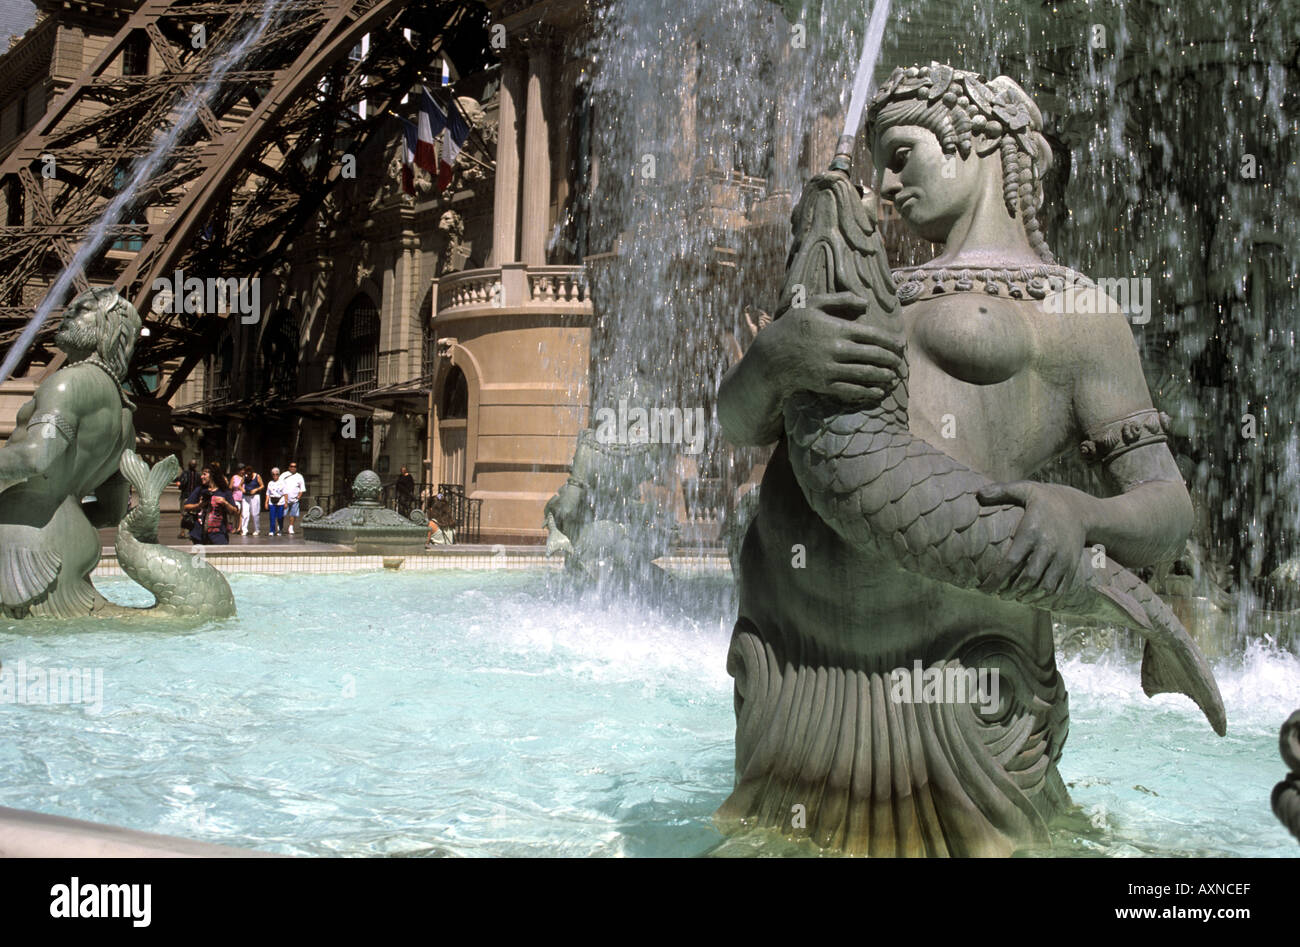 Mermaid Fountain at Paris Casino Las Vegas Stock Photo